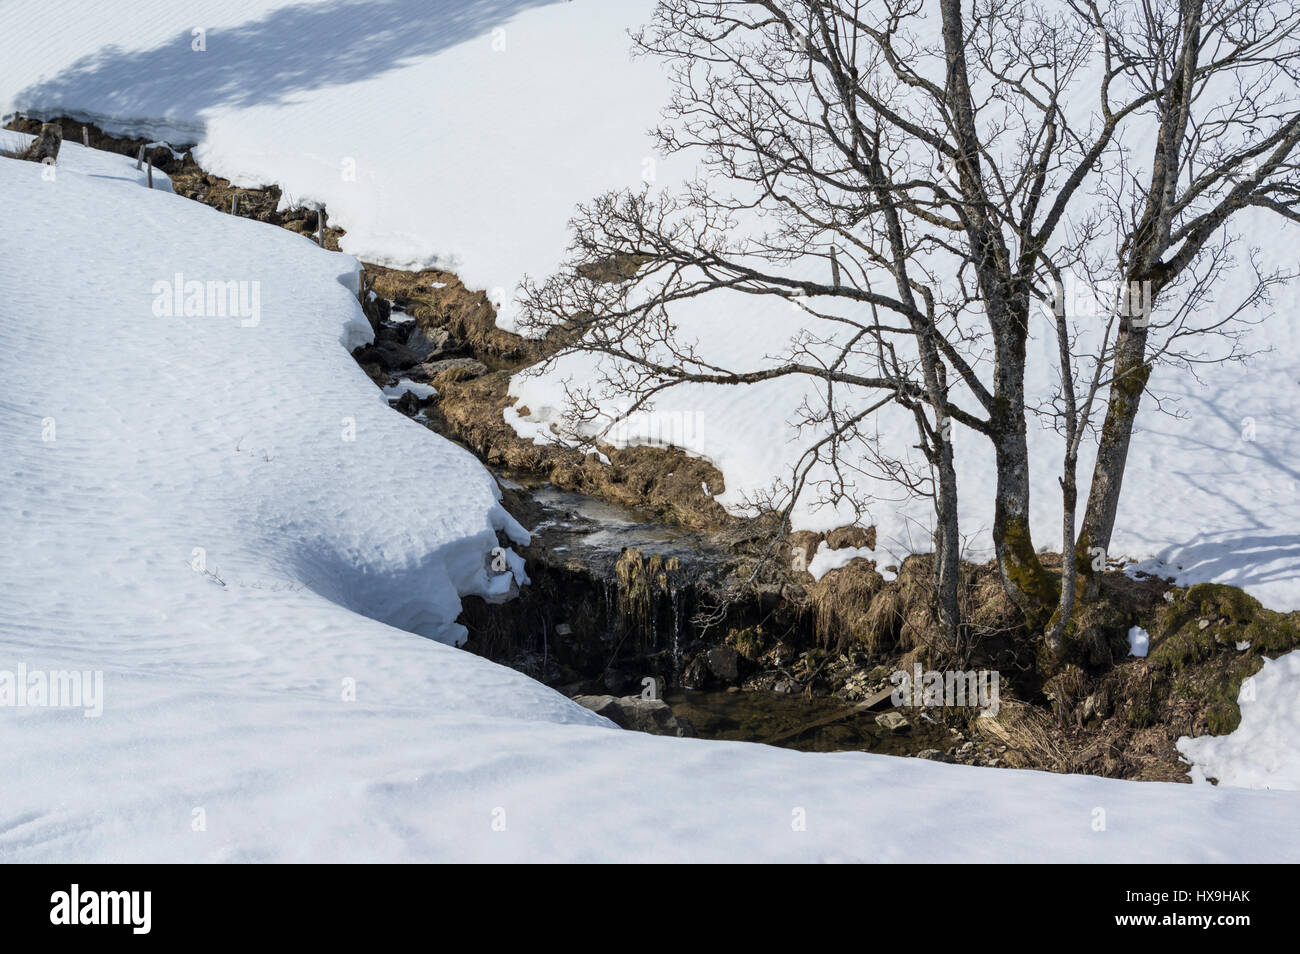 Paesaggio invernale in una giornata di sole. Piccolo ruscello fiancheggiato da alberi decidui circondato da prati innevati. La Svizzera centrale. Foto Stock